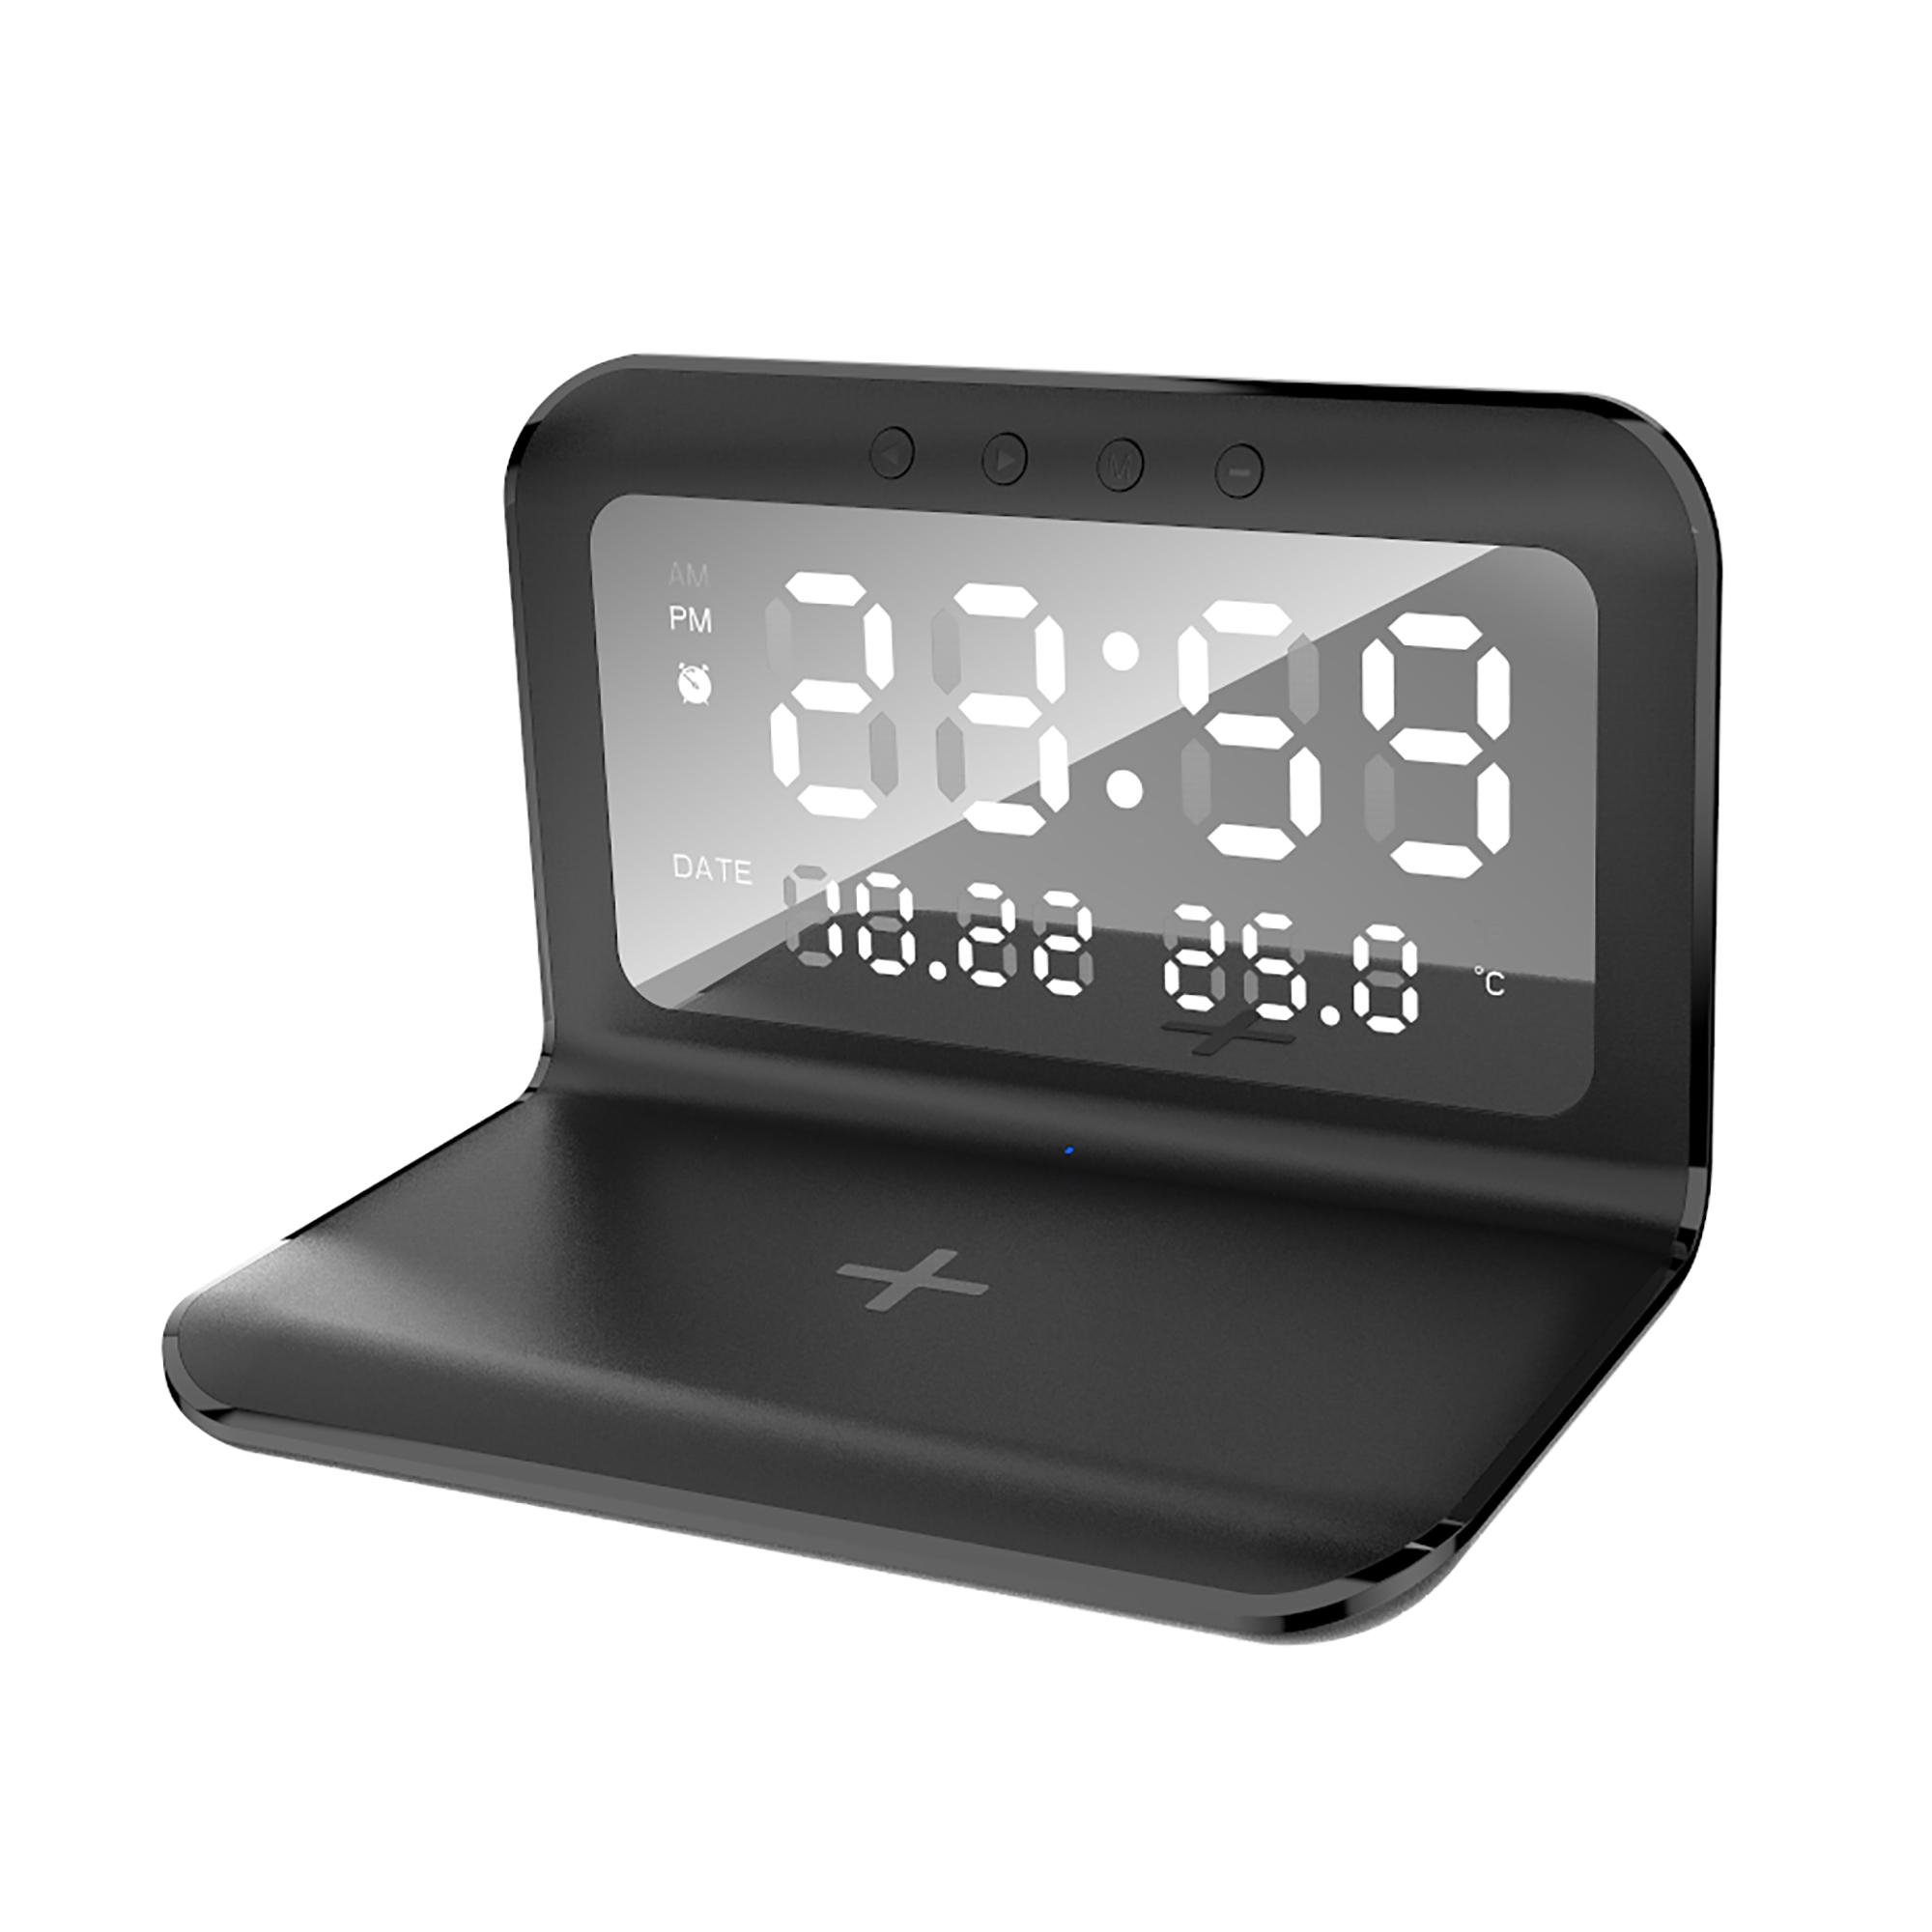 Настольные часы "Smart Time" с беспроводным (15W) зарядным устройством, будильником и термометром, со съёмным дисплеем, черный , арт. 9611-3 - вид 1 из 4